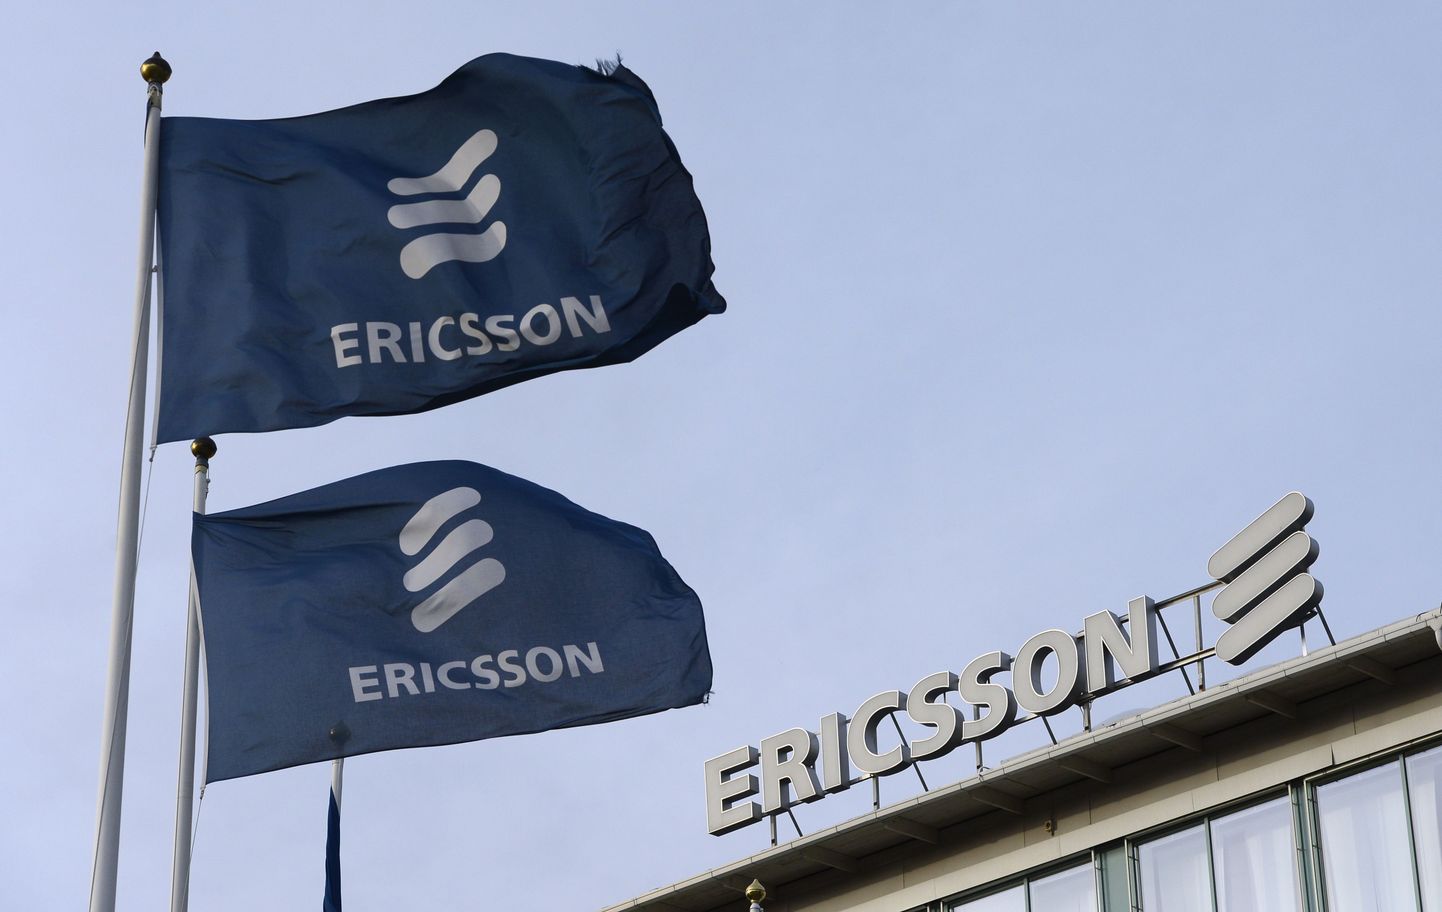 Ericssoni logo